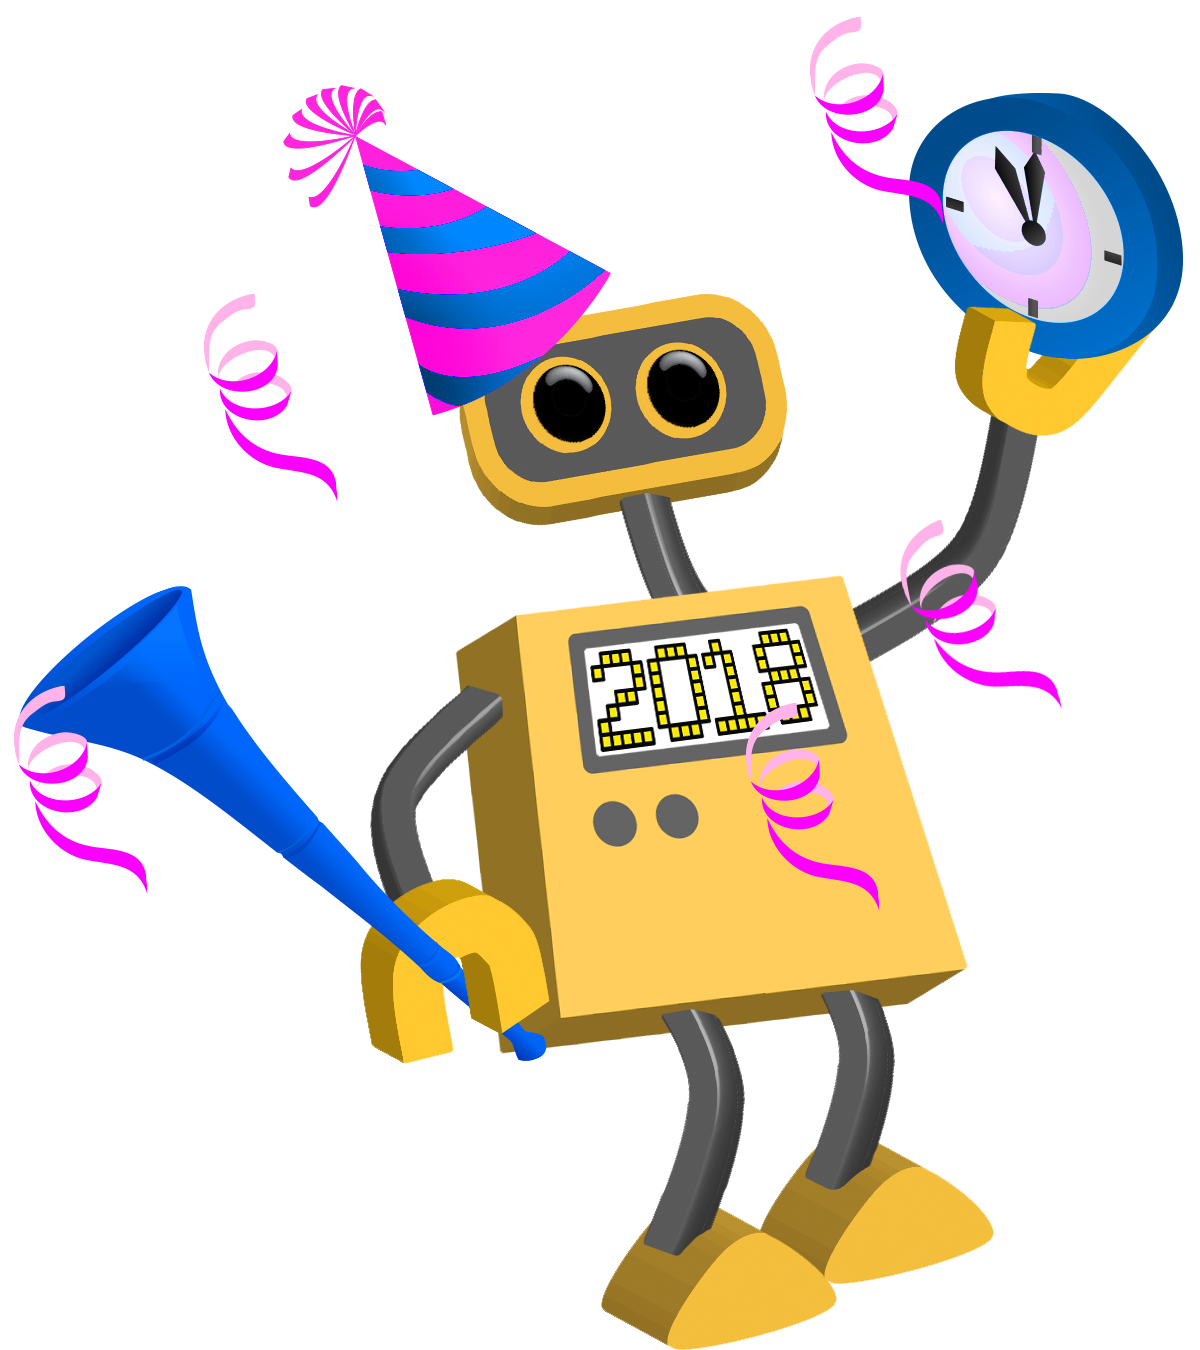 Robot Wishing You Happy New Year 2018